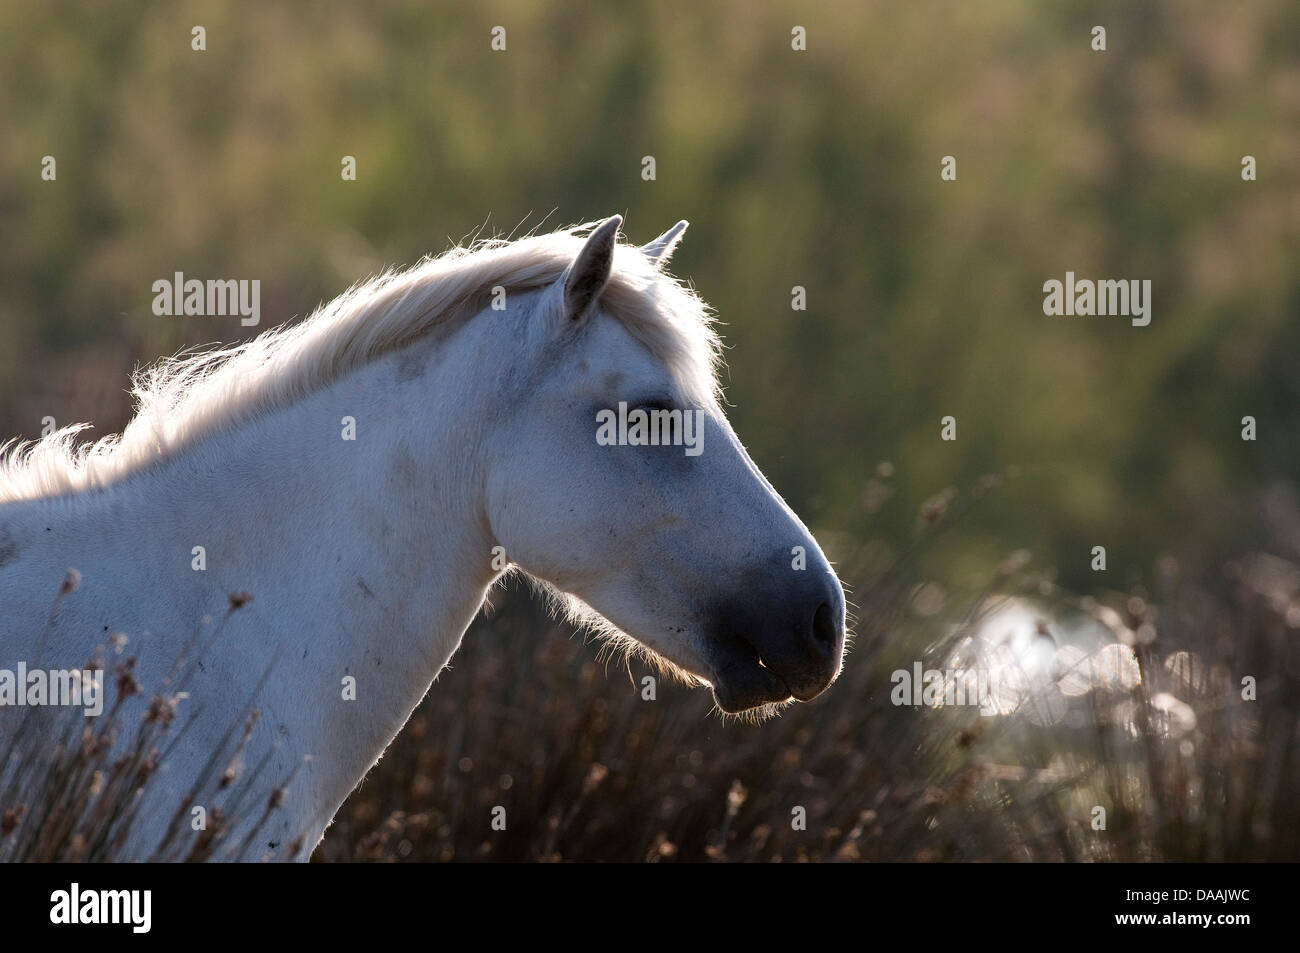 Europe, Camargue, Wild Horse, Horse, animal, head, France, Equus caballus, white horse Stock Photo